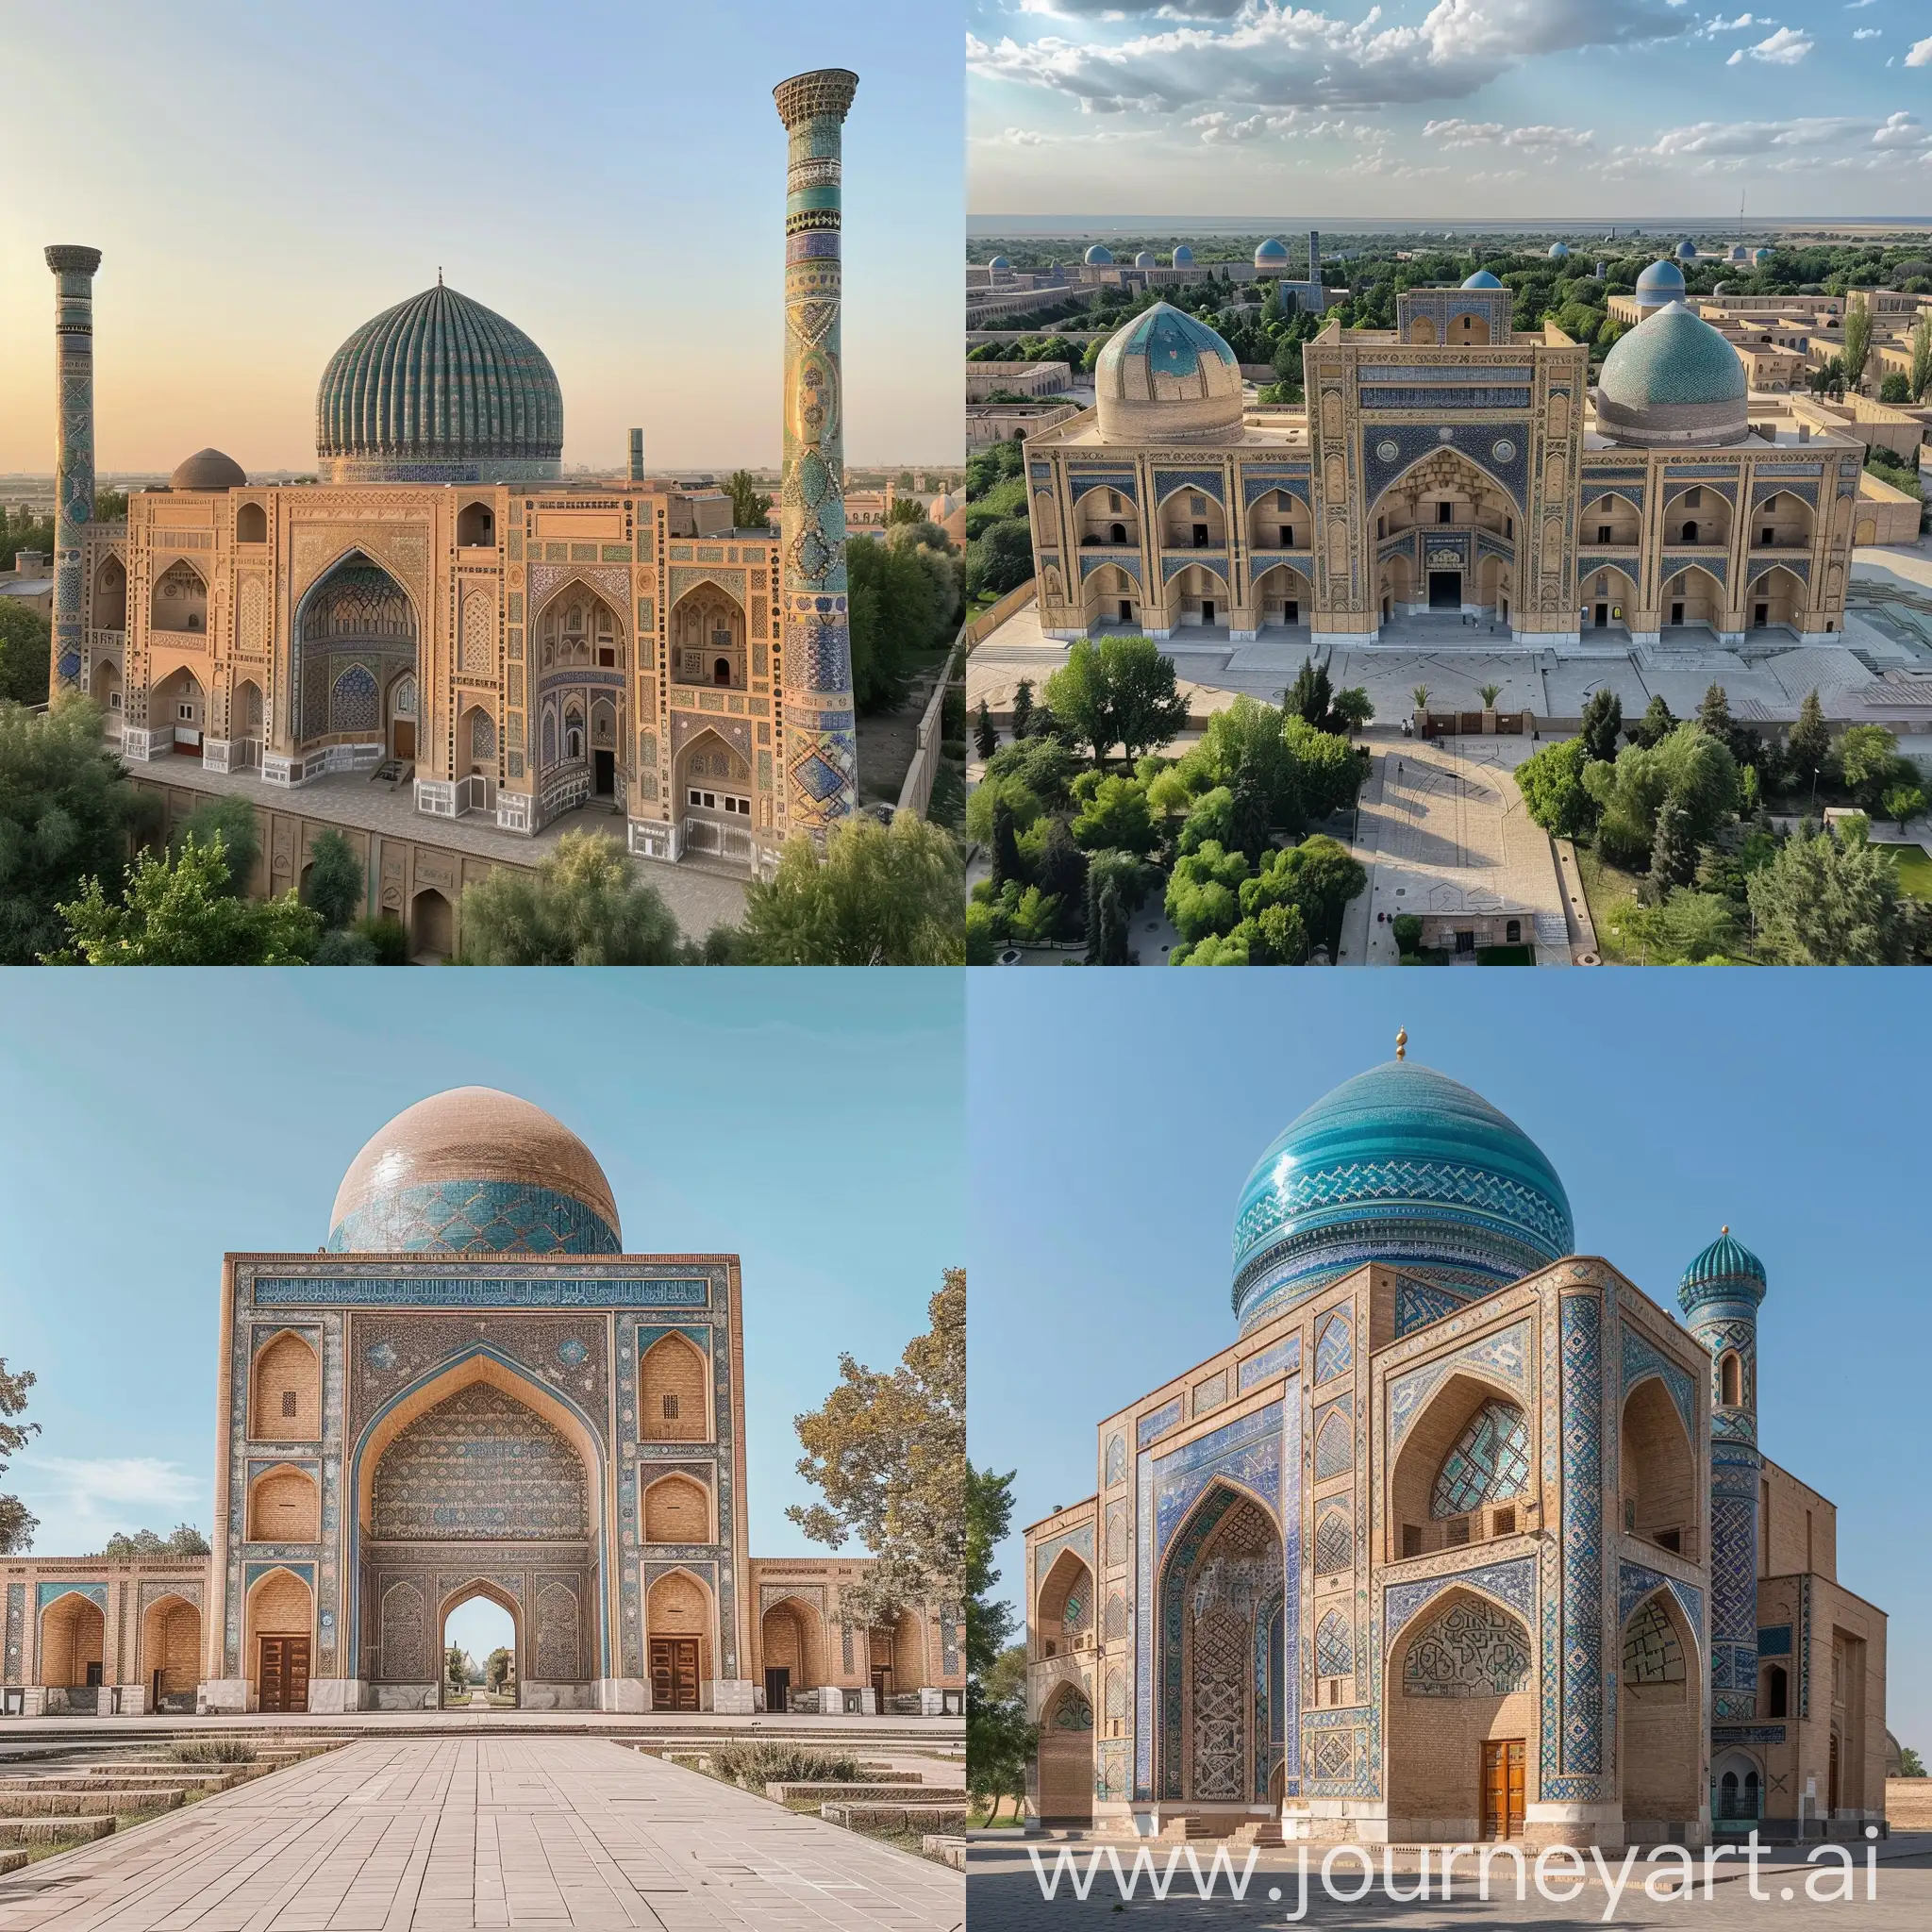 Uzbekistan in 2050